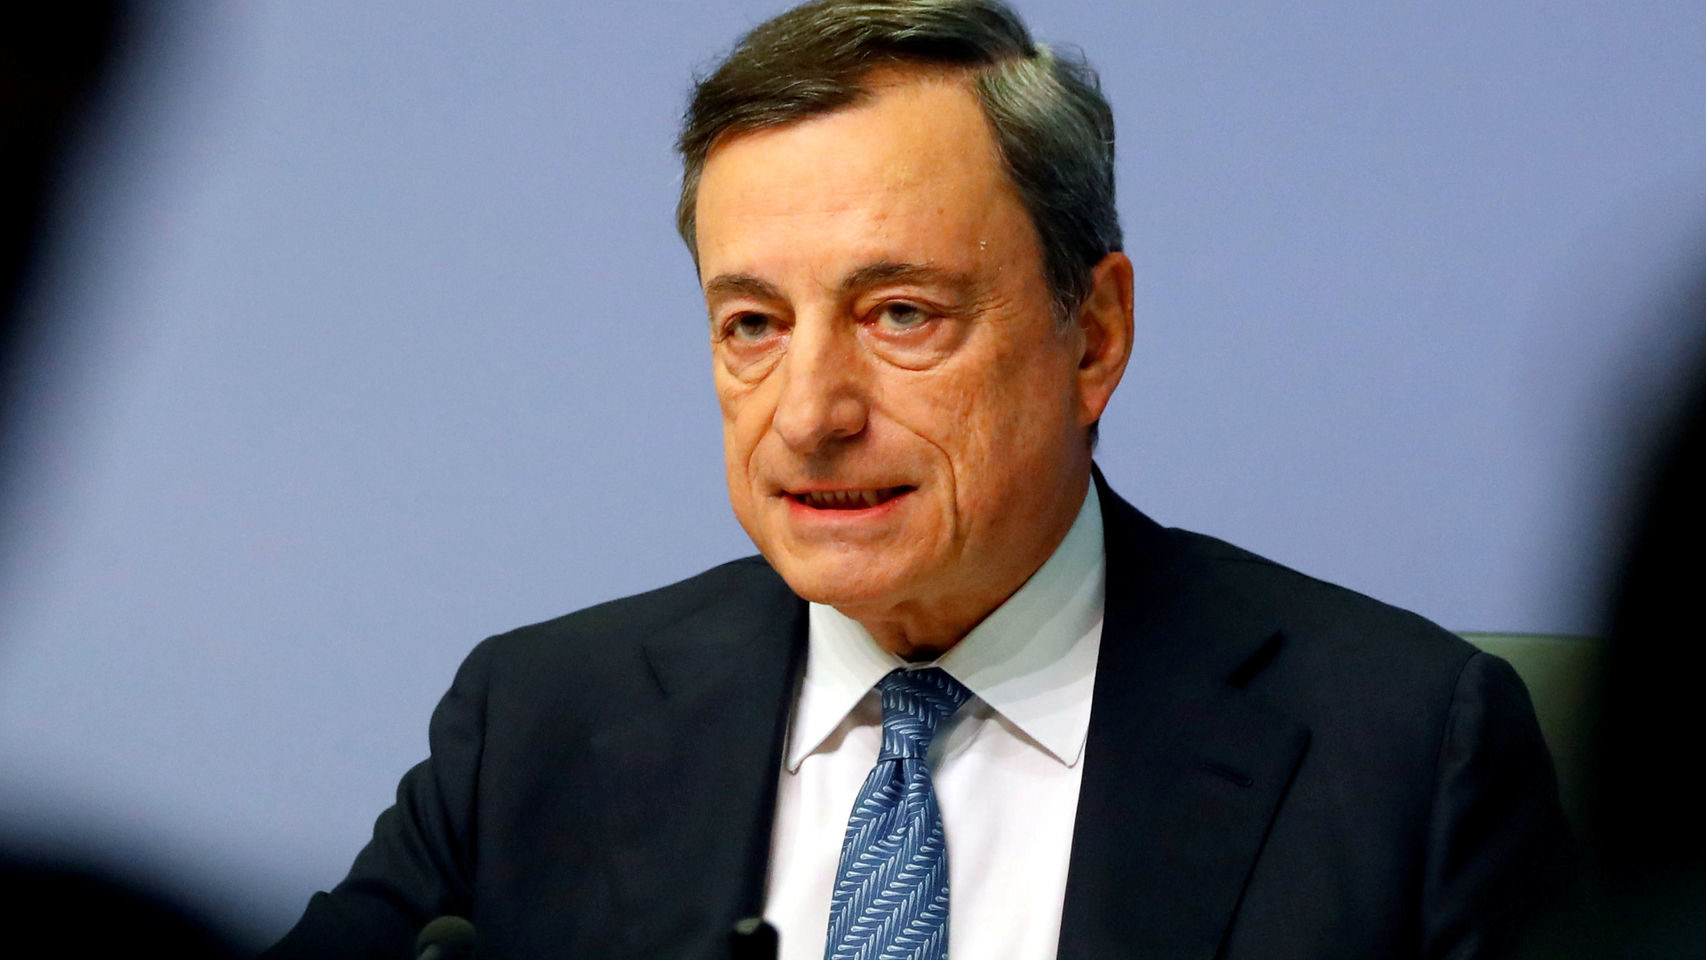 deuda pública,EU,BCE,Draghi